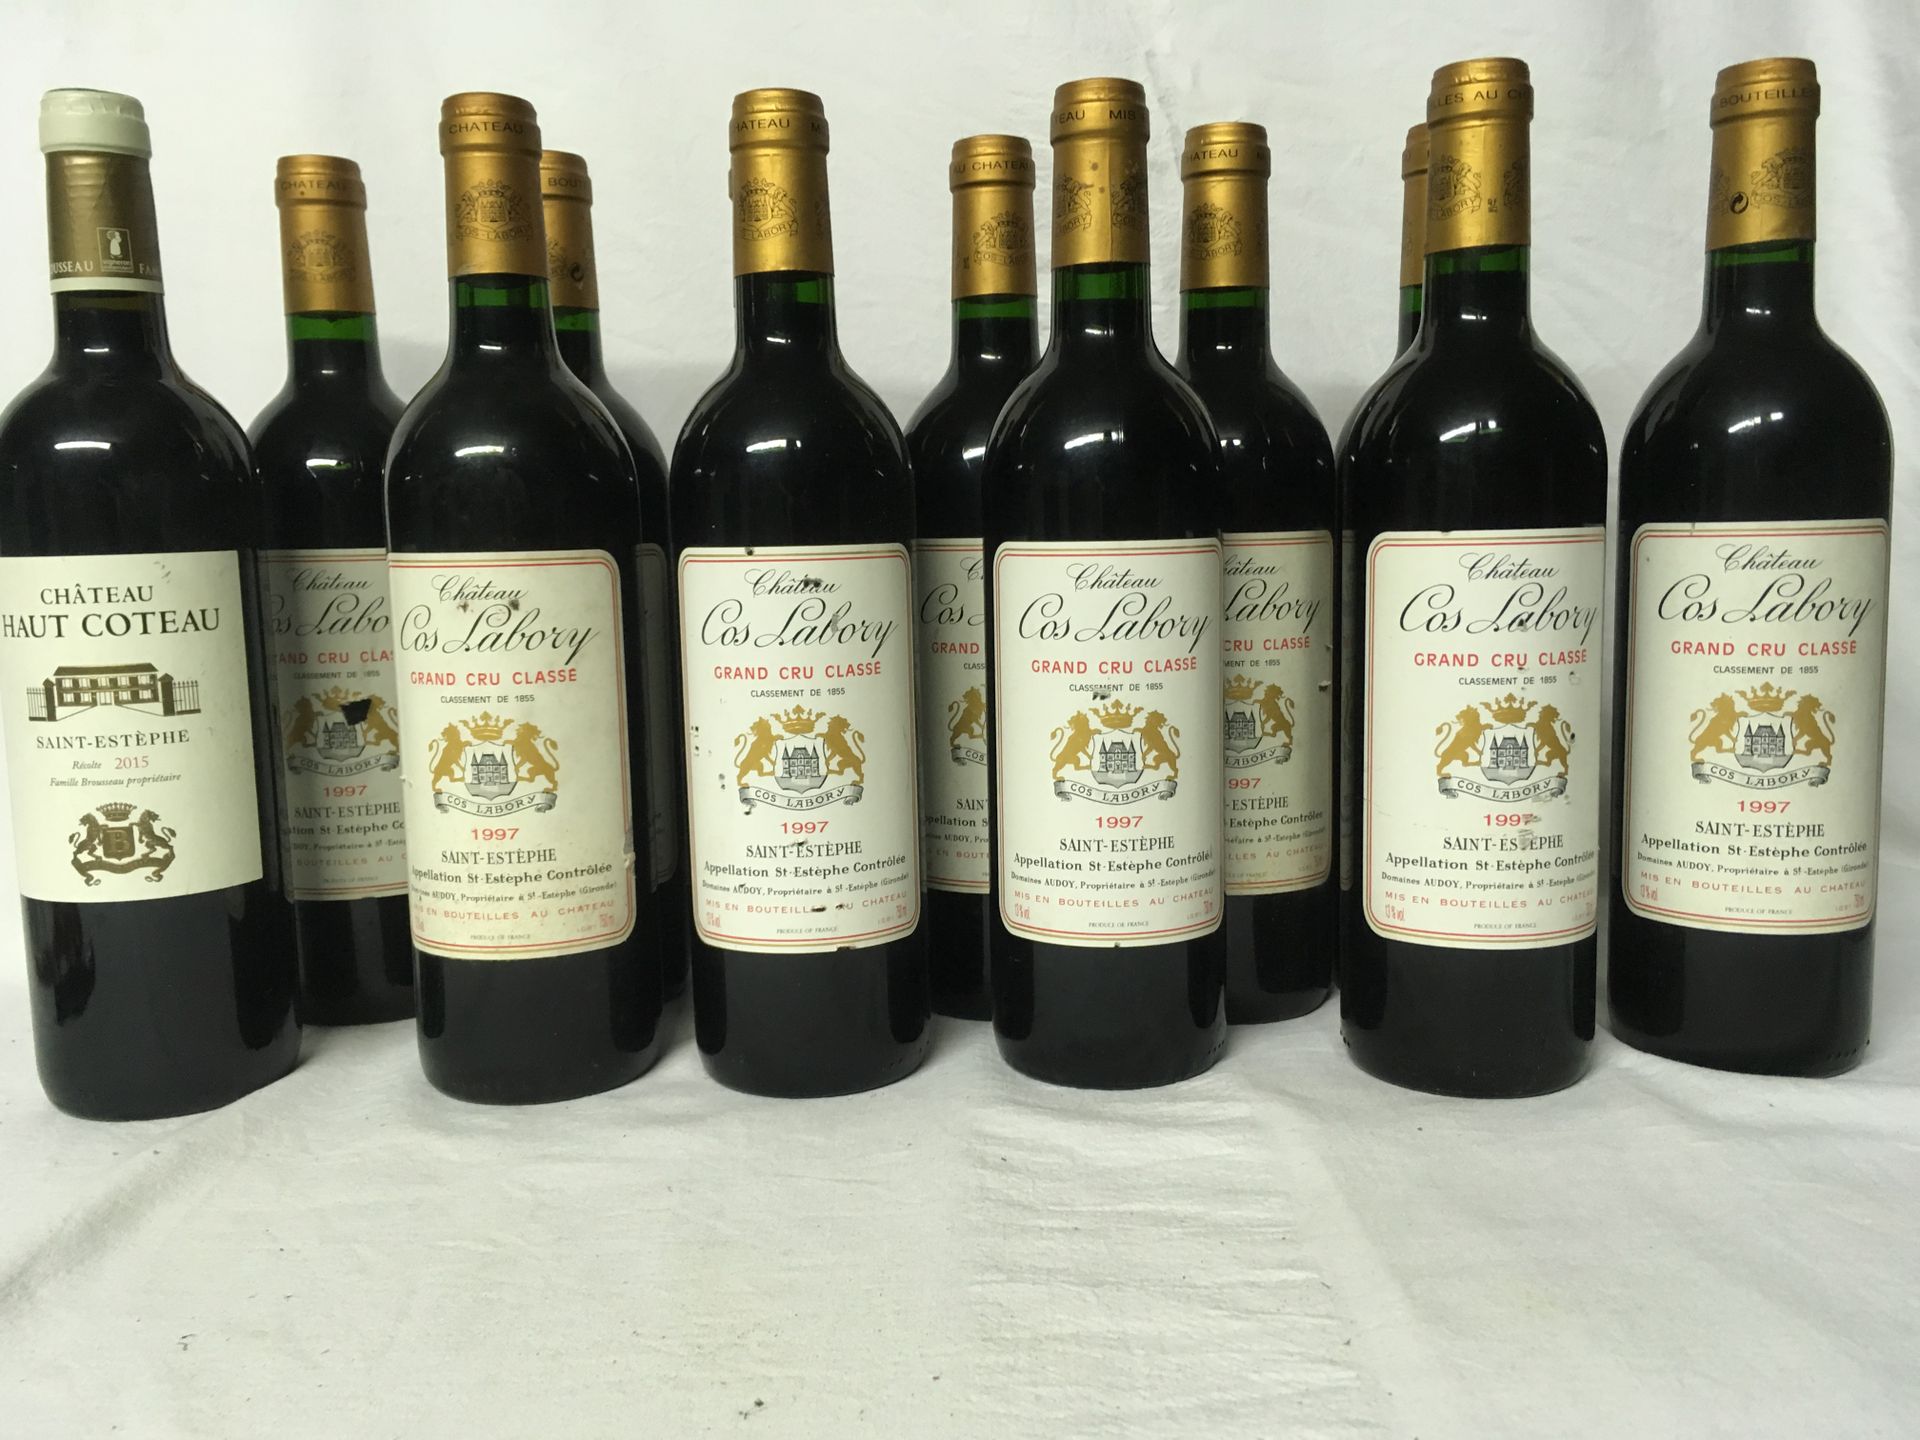 Null 1 SAINT ESTEPHE Château Haut Coteau 2015 75cl

11 圣埃斯泰普-科斯-拉波里酒庄 1997年 75cl